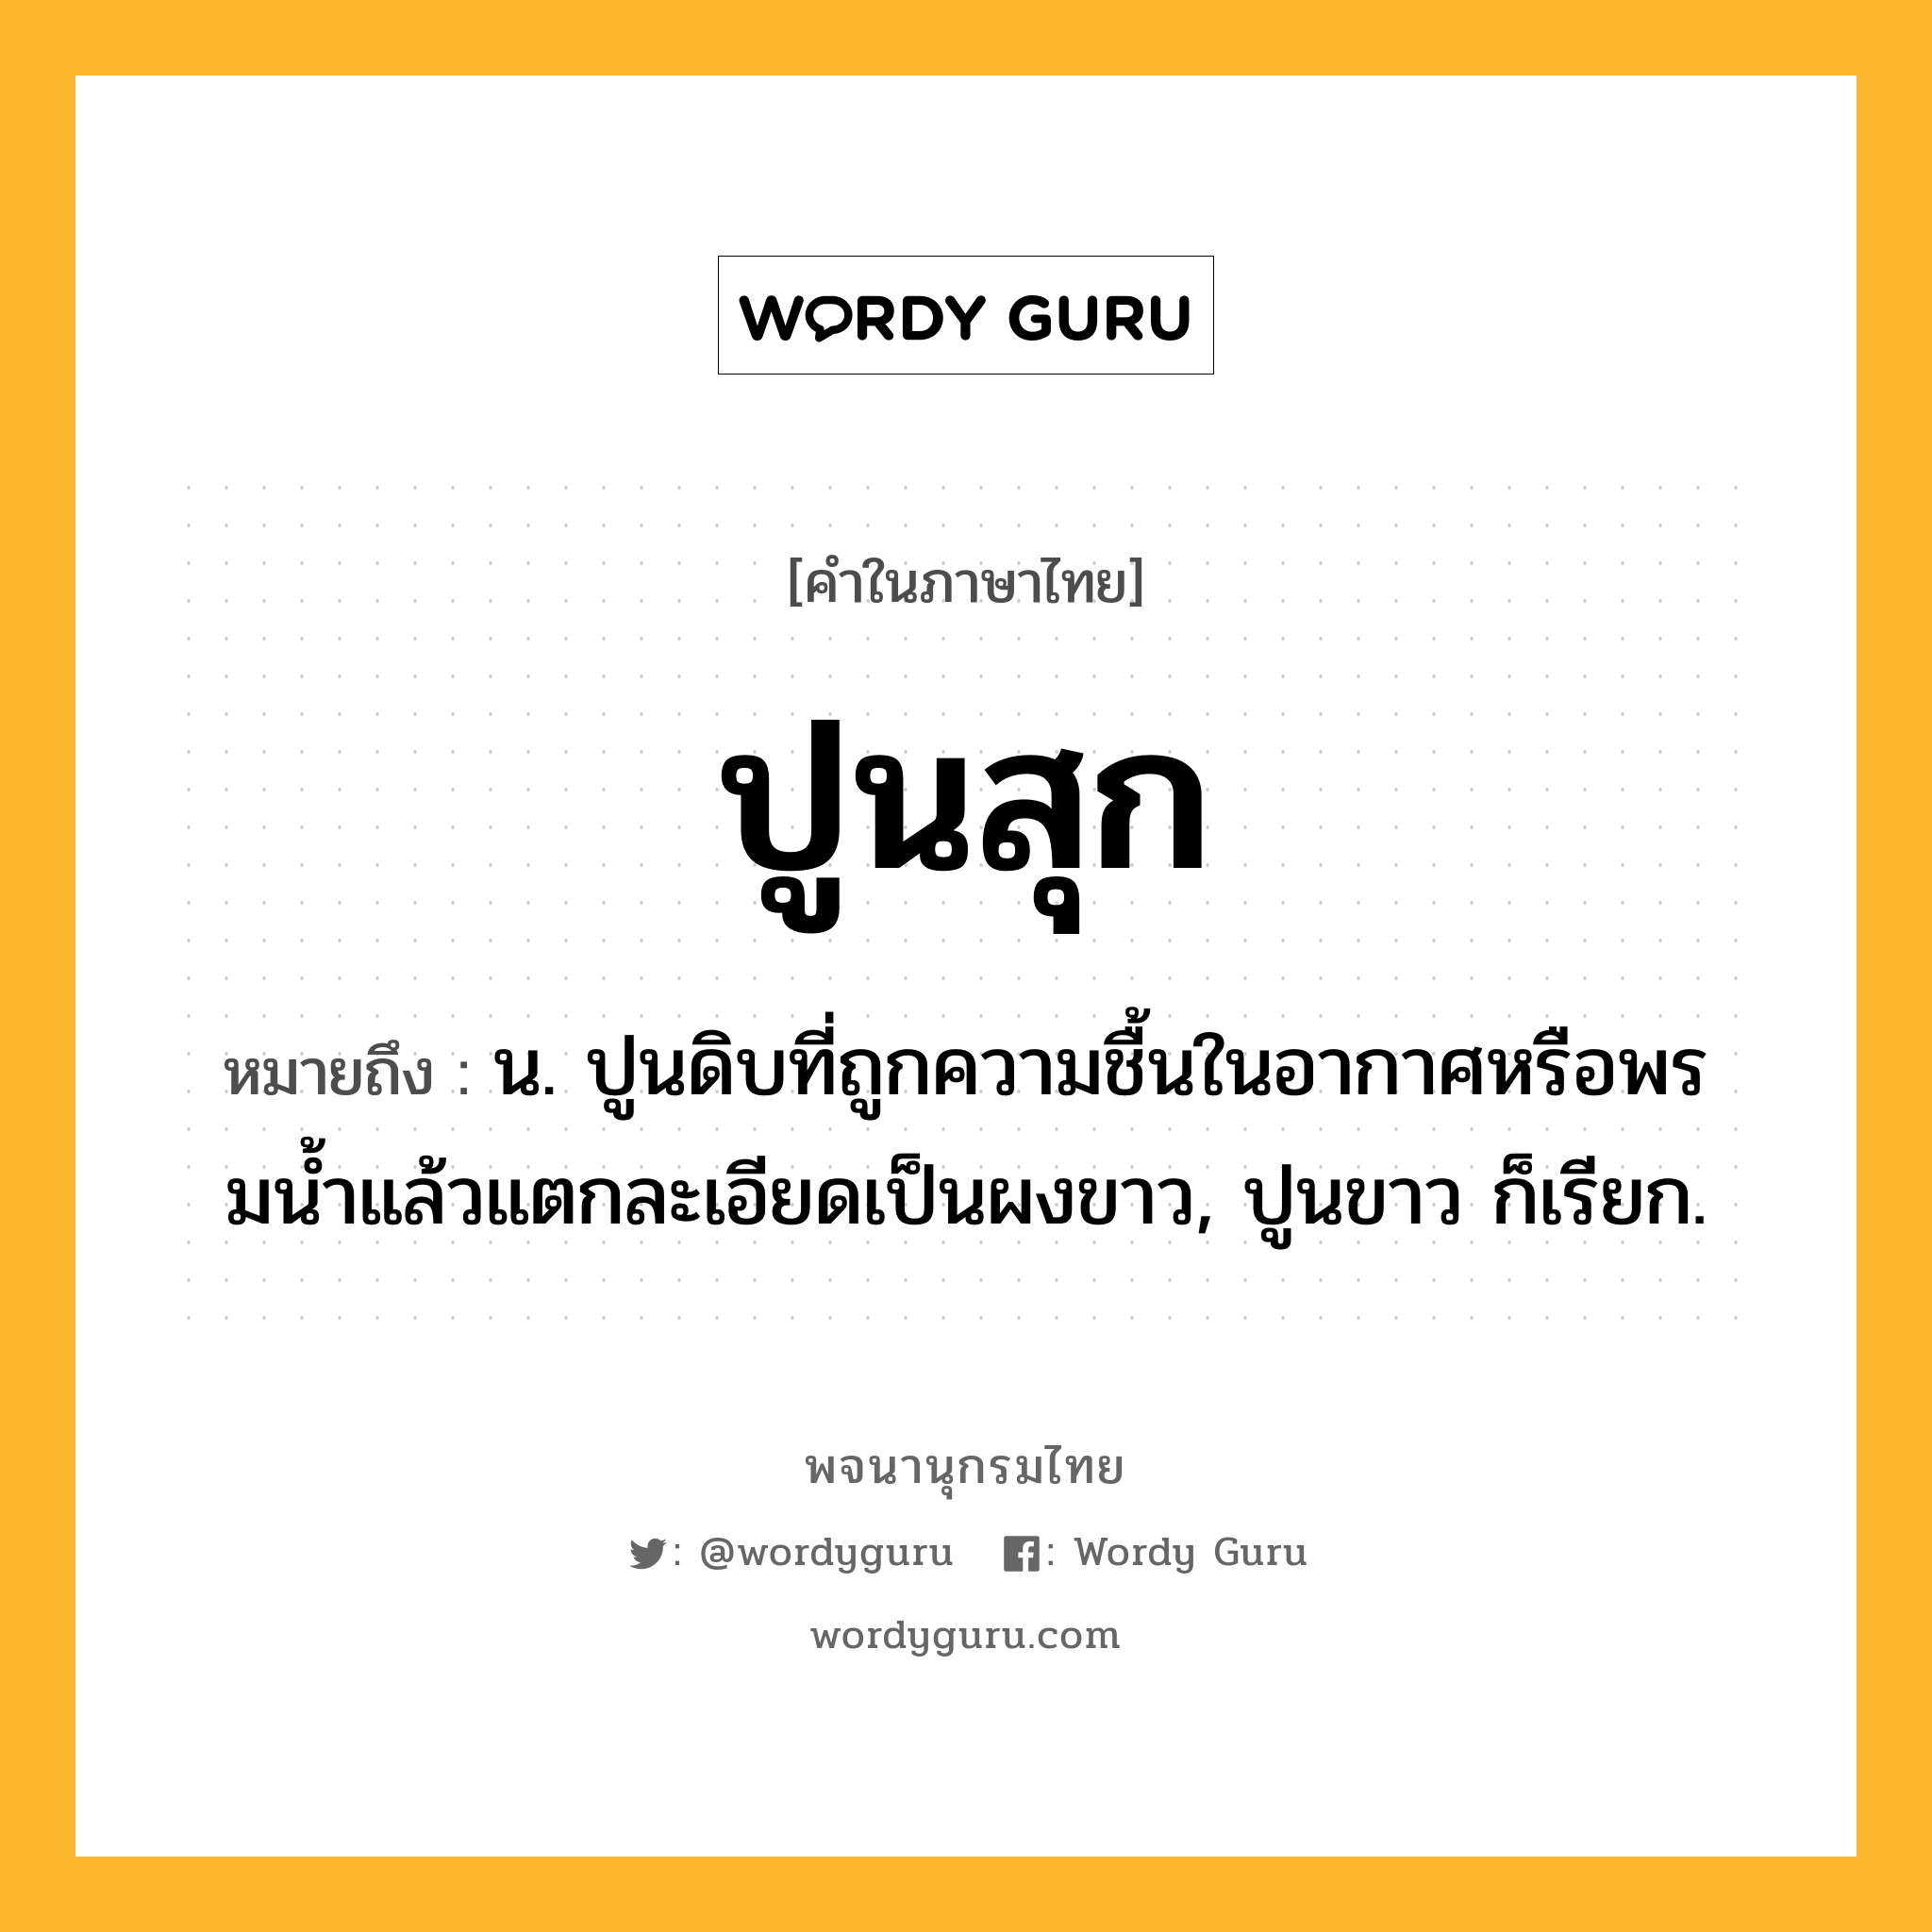 ปูนสุก หมายถึงอะไร?, คำในภาษาไทย ปูนสุก หมายถึง น. ปูนดิบที่ถูกความชื้นในอากาศหรือพรมนํ้าแล้วแตกละเอียดเป็นผงขาว, ปูนขาว ก็เรียก.